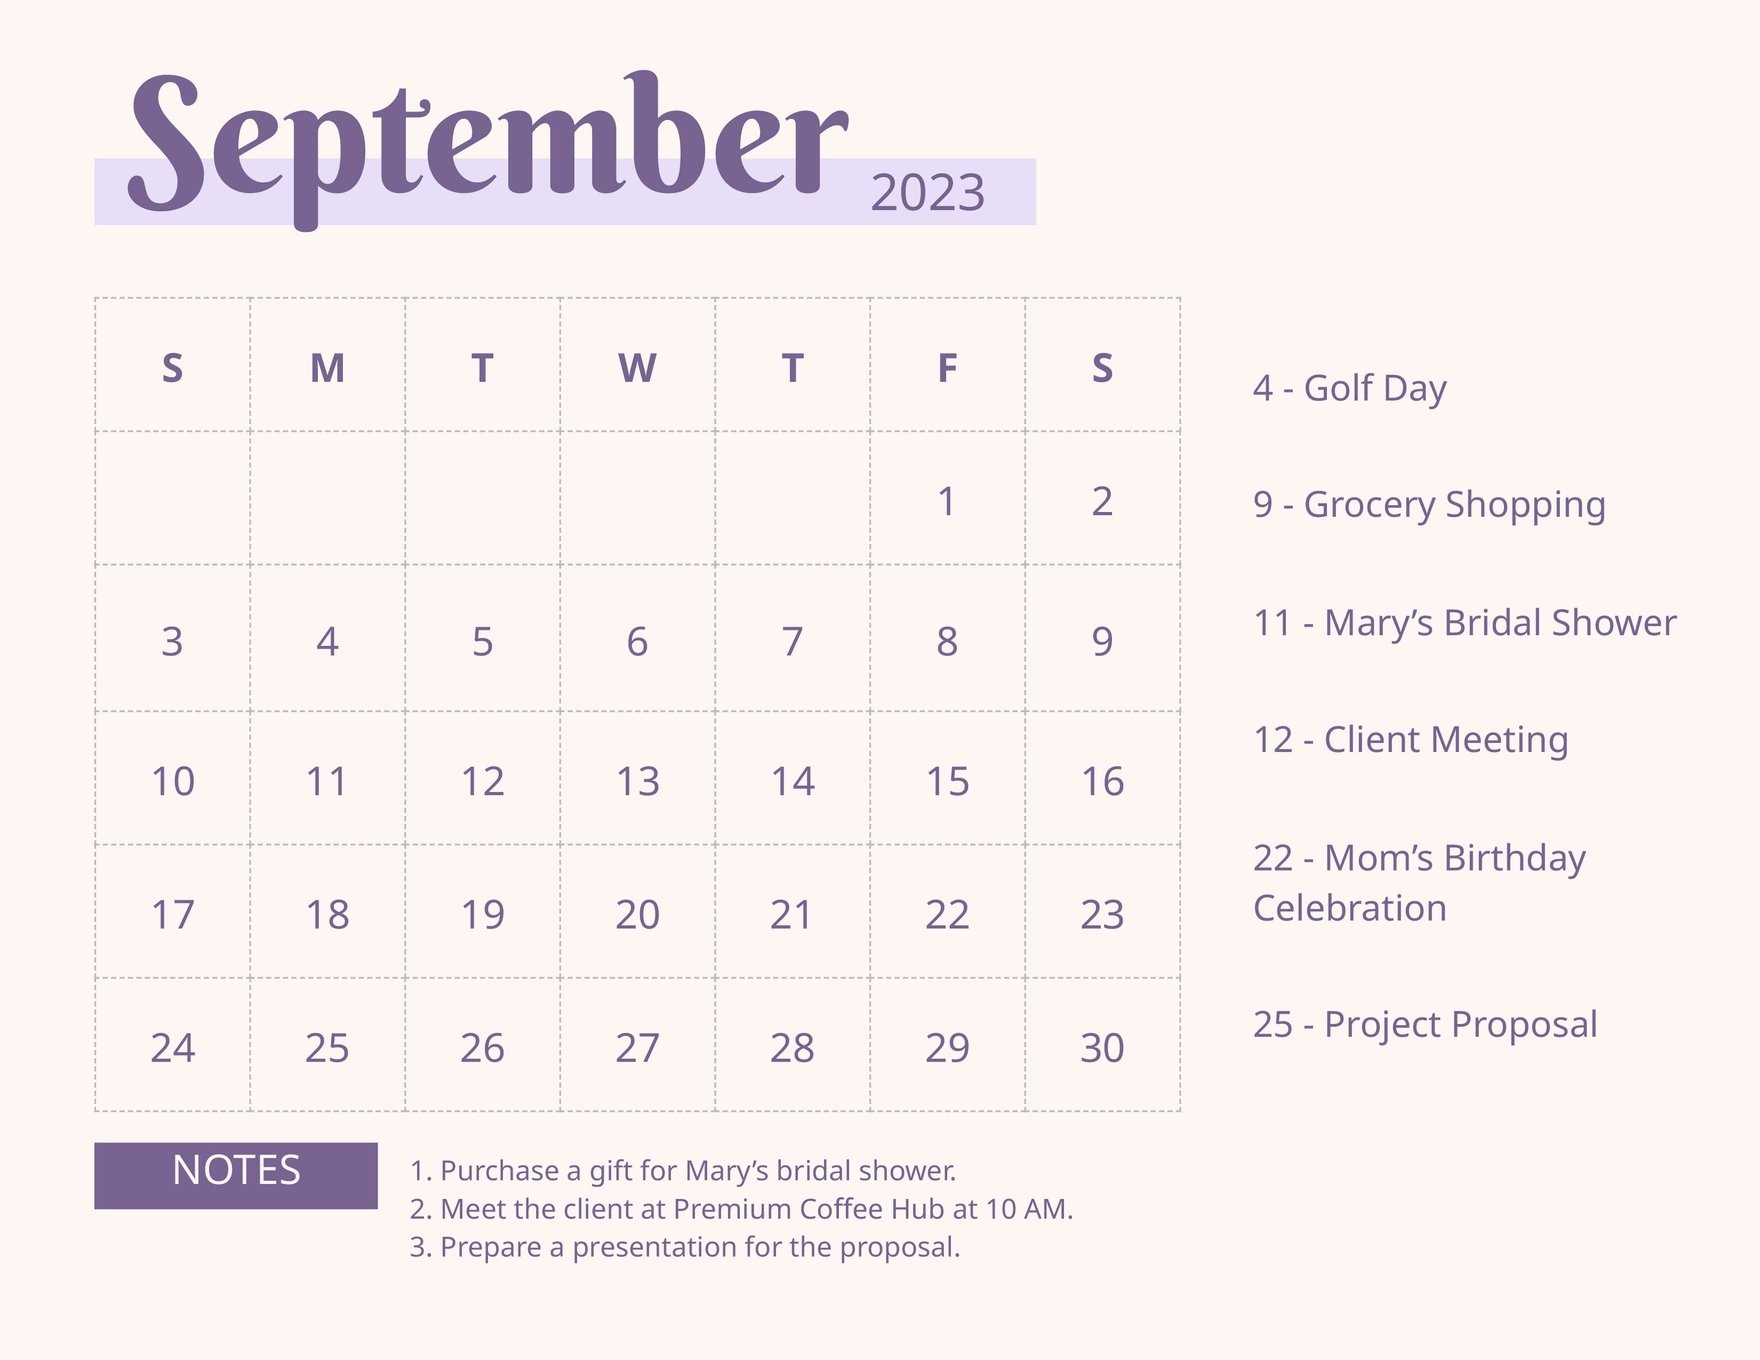 September 2023 Calendar Template in Illustrator, EPS, JPG, Excel, Word ...